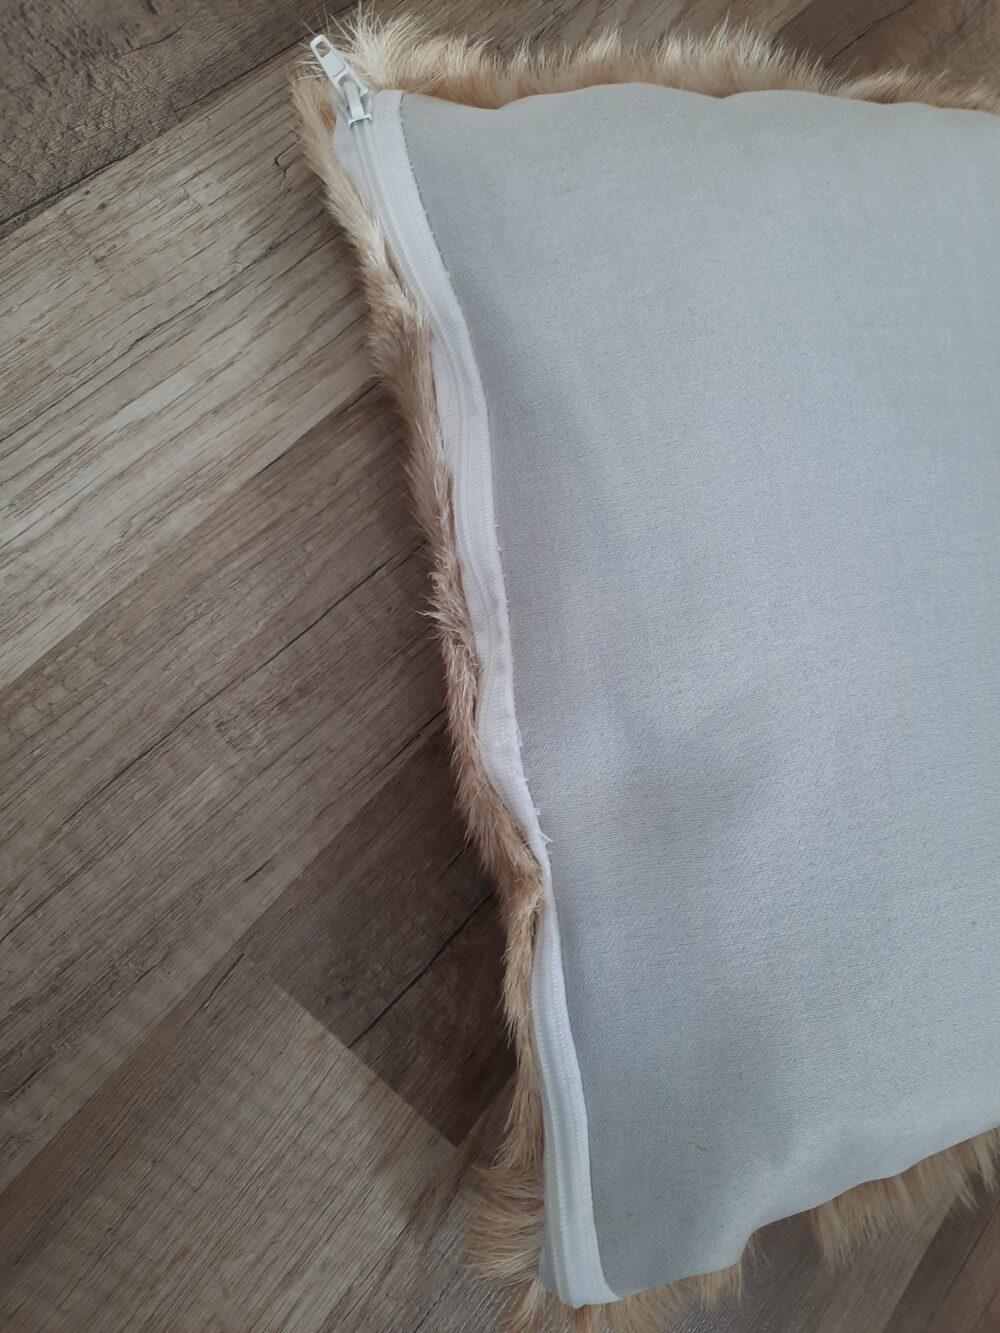 Goatskin Decorative Pillows pillows Producent owczych skór dekoracyjnych | Tannery Sheepskin | KalSkór 6